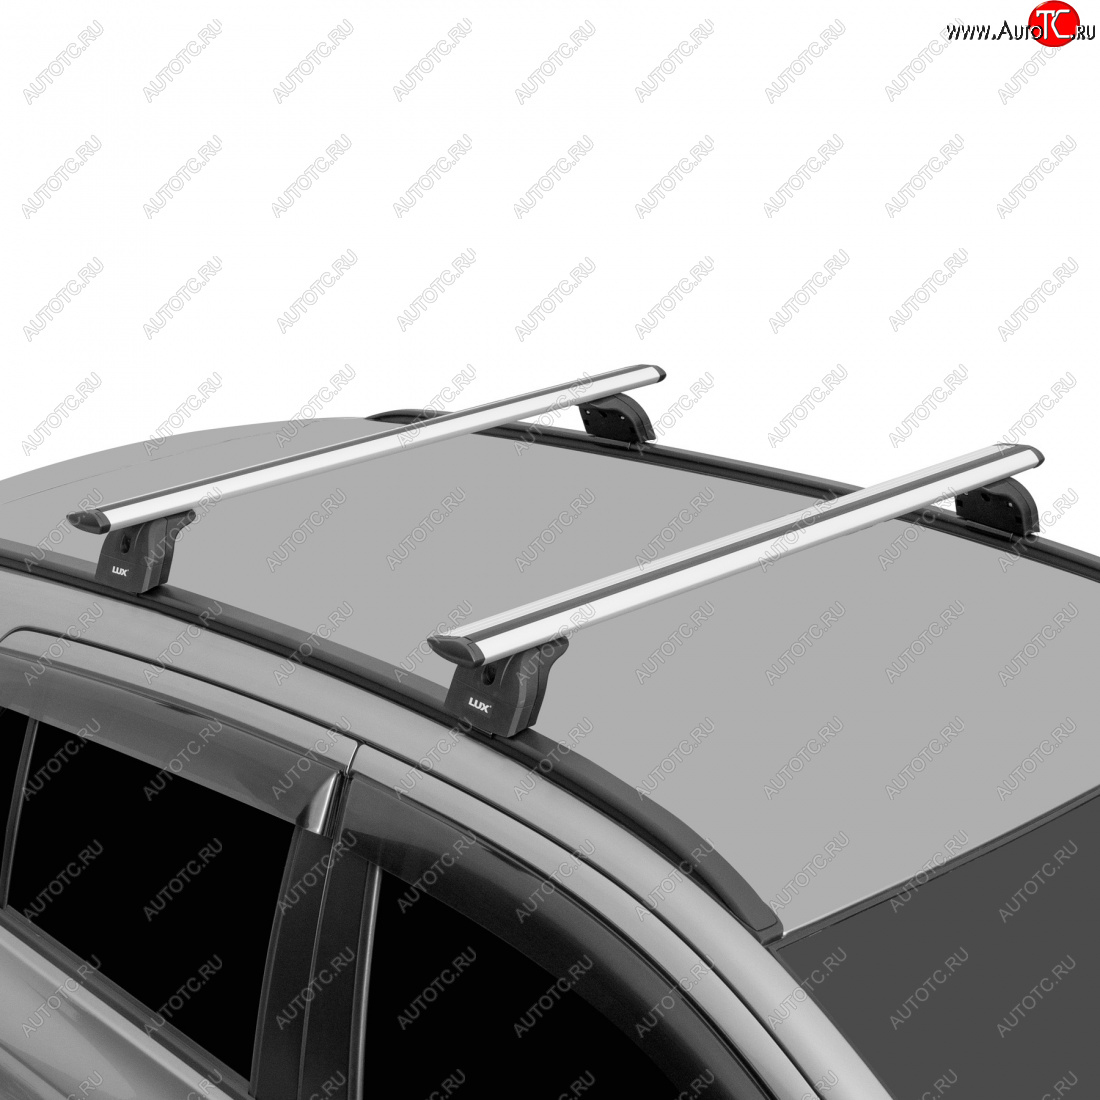 11 997 р. Багажник на крышу с низкими рейлингами сборе LUX  Volvo XC60 (2008-2017) (дуги аэро-трэвэл 120 см, без замка, серебро)  с доставкой в г. Калуга